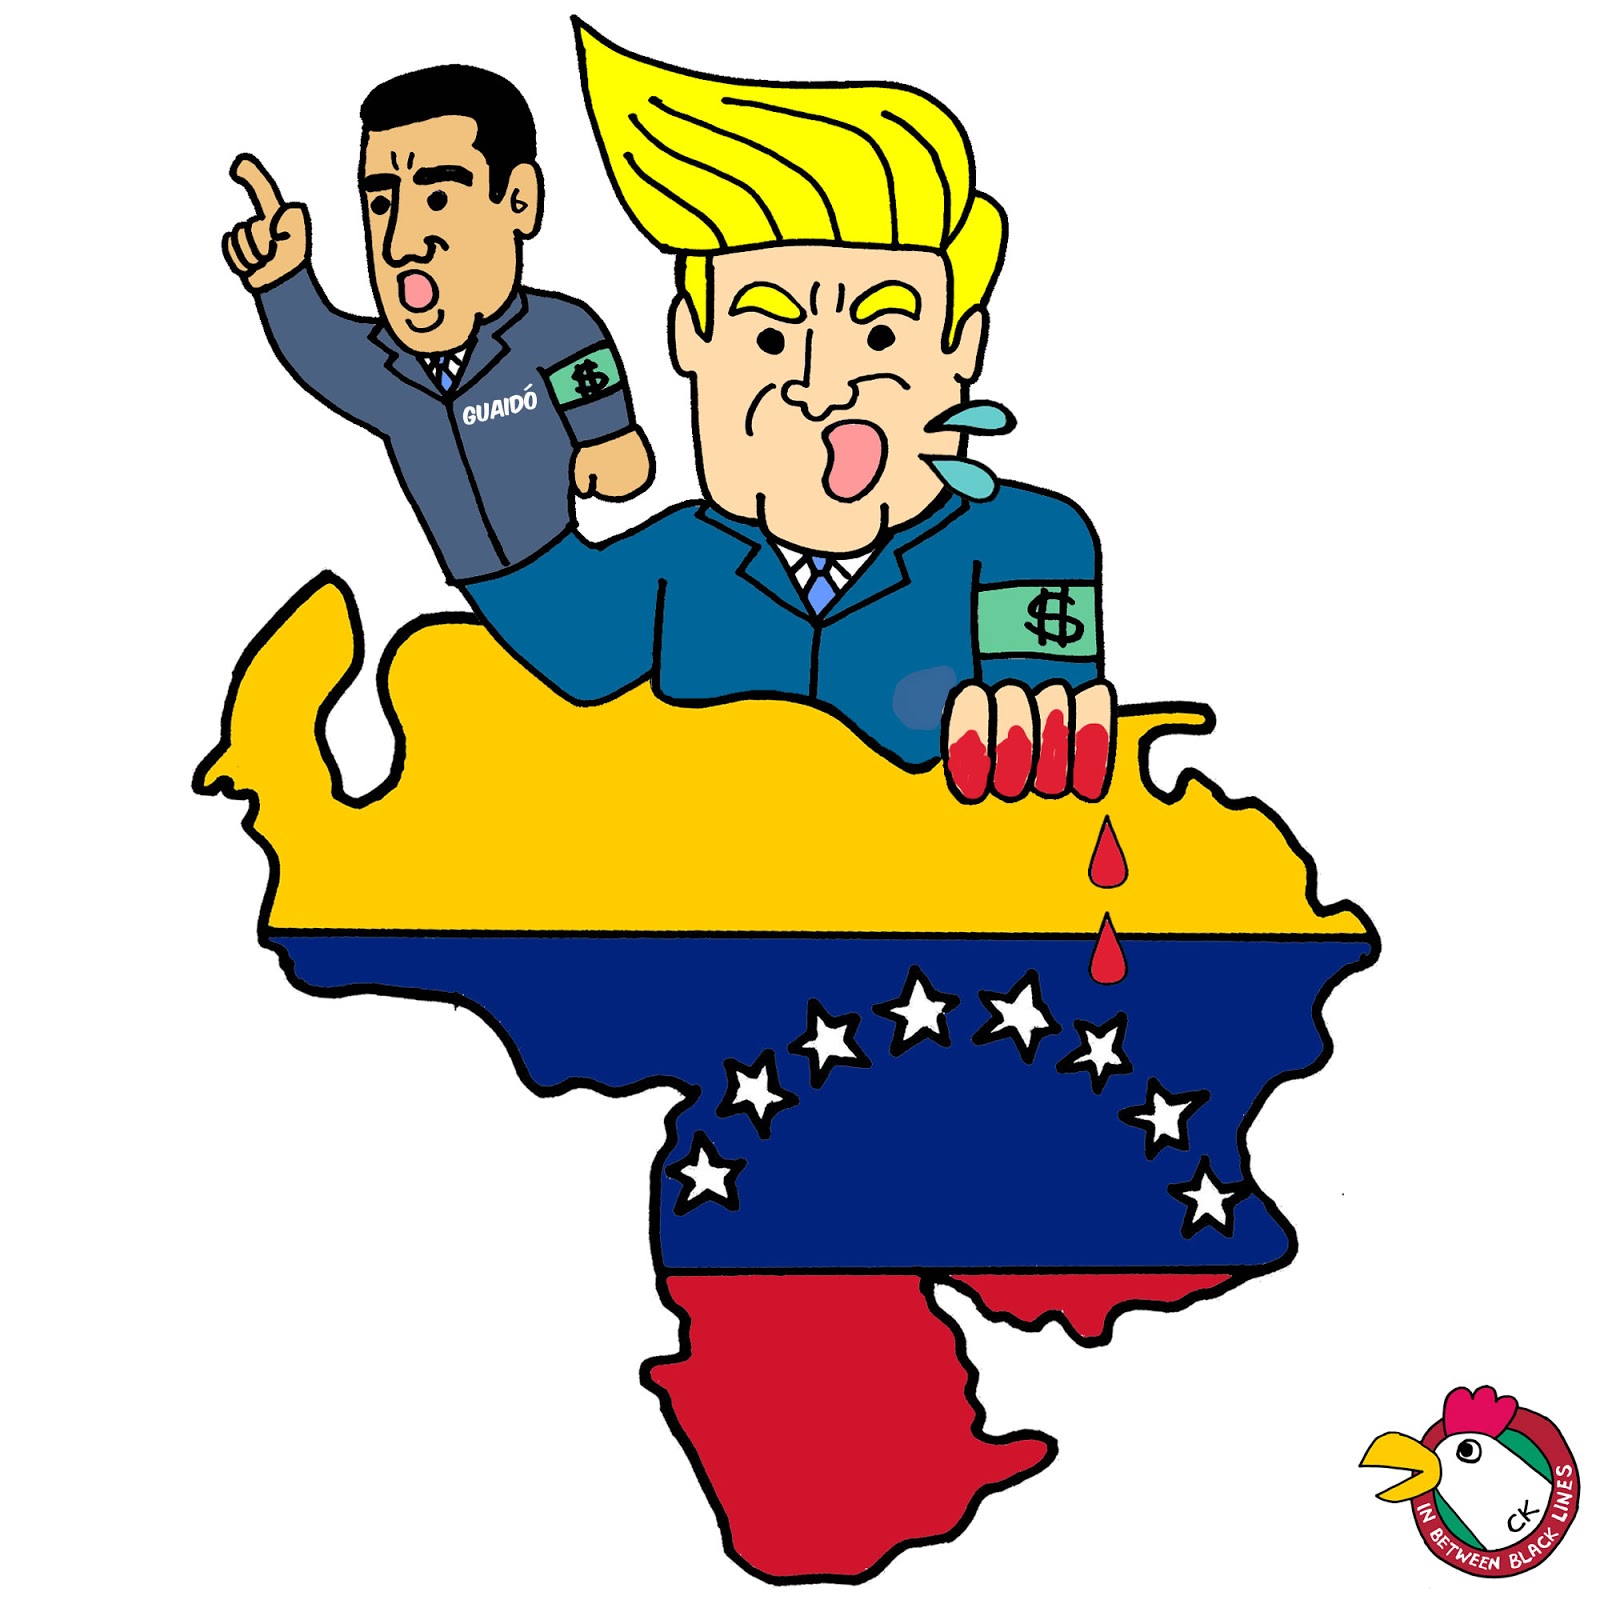 安那琪的文字乌托邦2 0 委内瑞拉 一场帝国主义介入的政变正在进行中